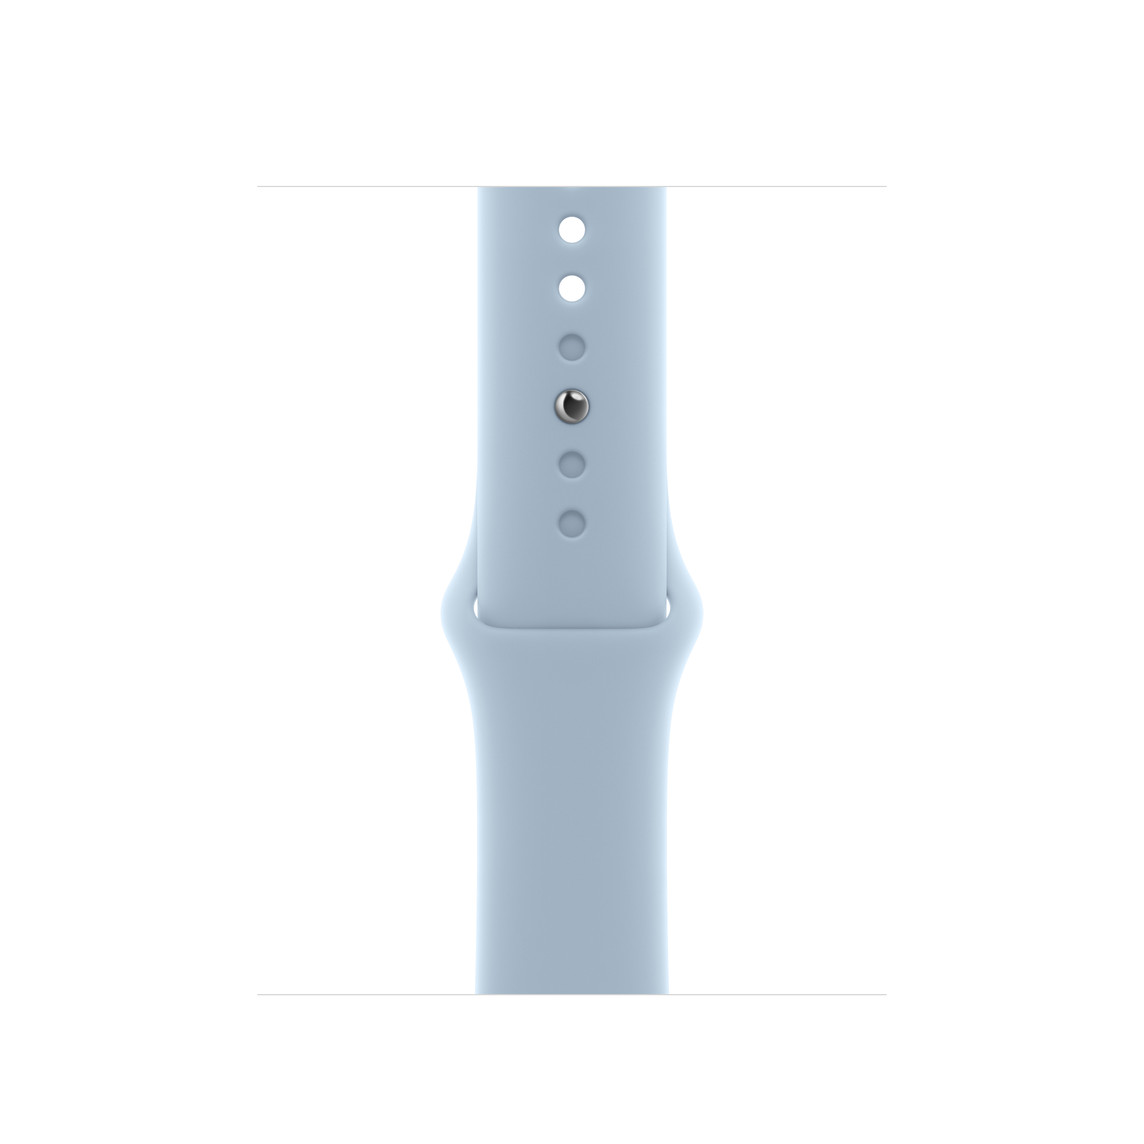 浅蓝色运动型表带，展示顺滑的氟橡胶材质和按扣加收拢式表扣。